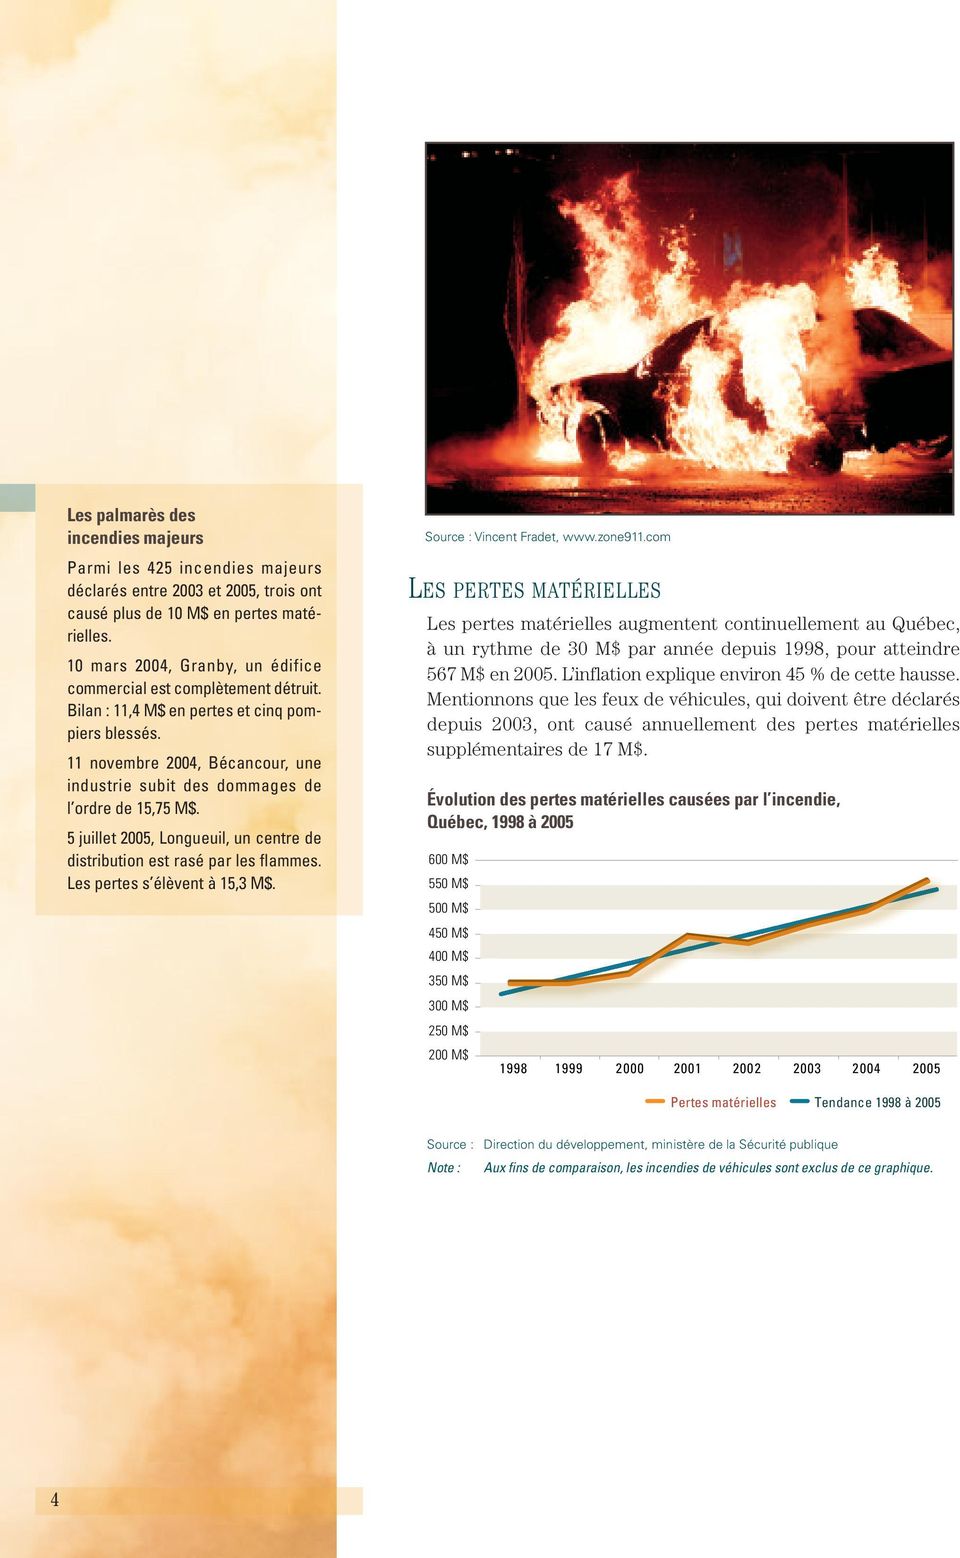 11 novembre 2004, Bécancour, une industrie subit des dommages de l ordre de 15,75 M$. 5 juillet 2005, Longueuil, un centre de distribution est rasé par les flammes. Les pertes s élèvent à 15,3 M$.